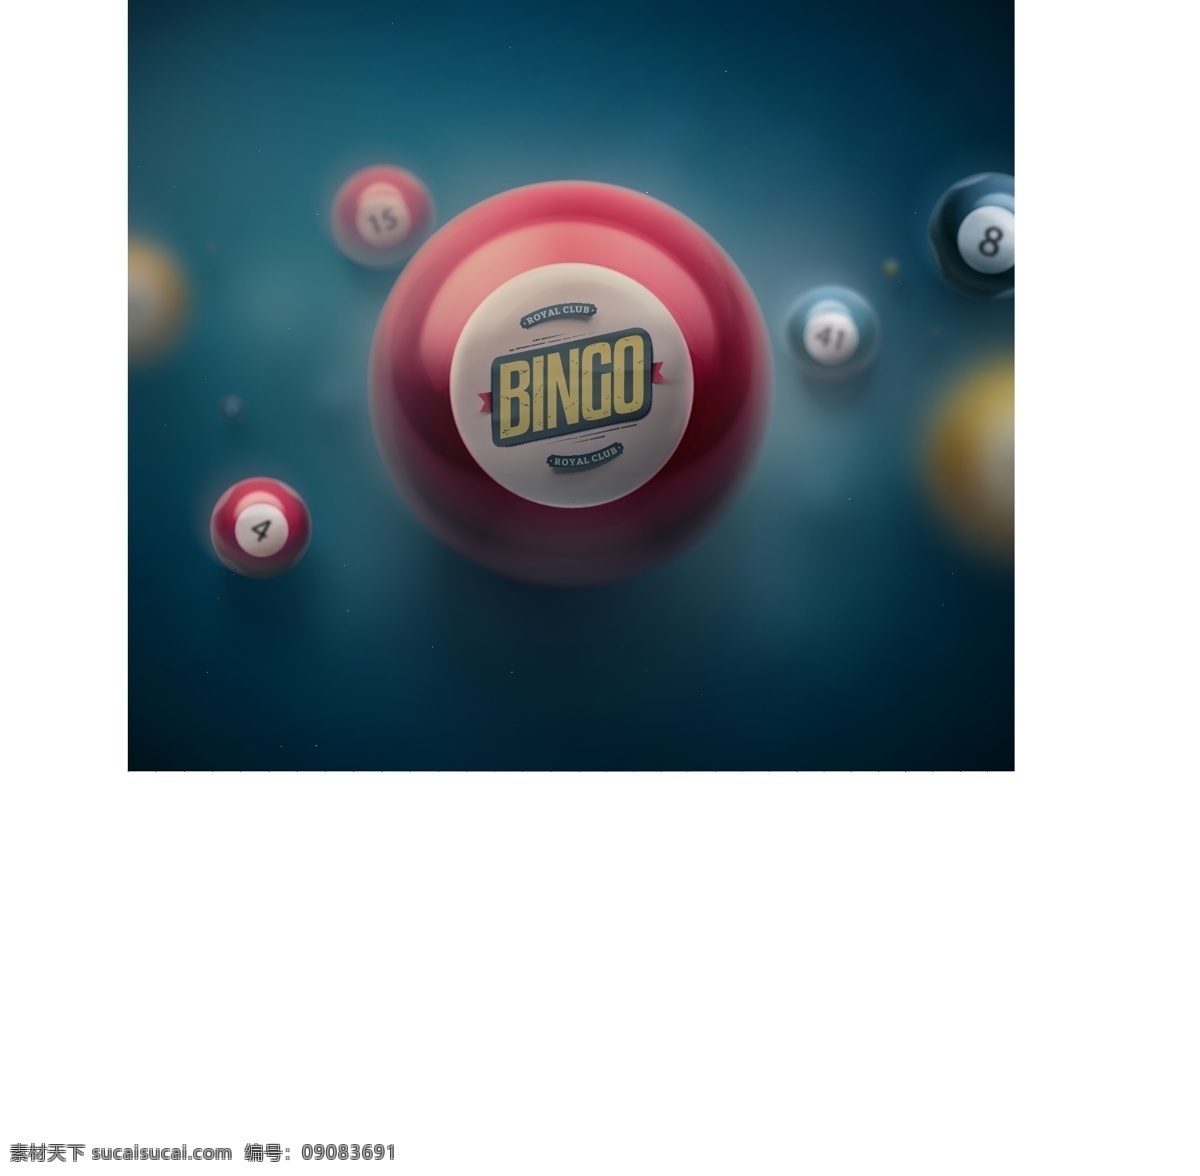 台球 矢量 素材图片 台球素材 朦胧背景 按钮设计 网页素材 psd素材 高清图片